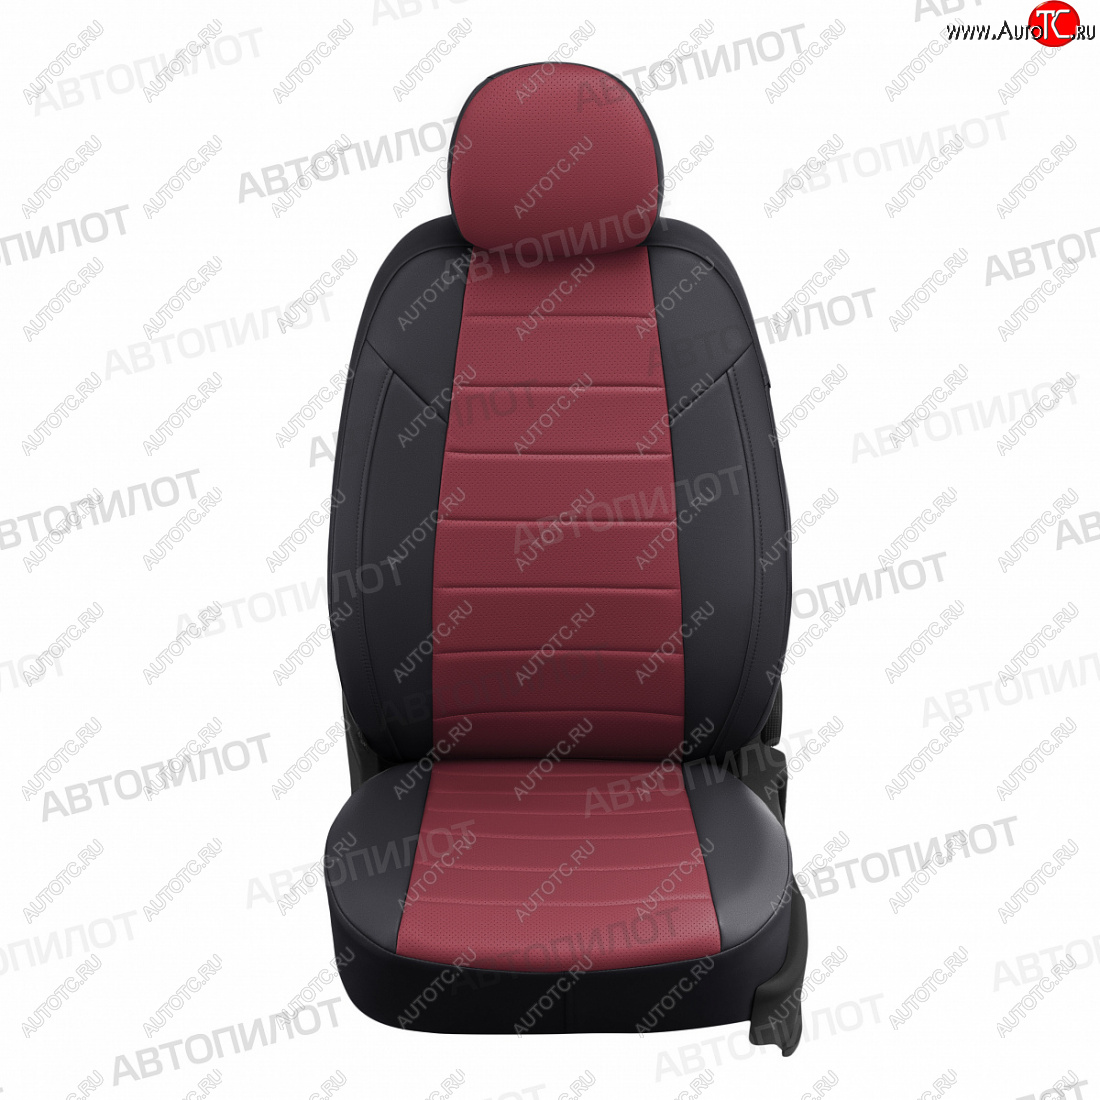 13 449 р. Чехлы сидений (экокожа/алькантара, Classic-40/60, прост. подг.) Автопилот  Fiat Albea  170 (2002-2012) (черный/бордовый)